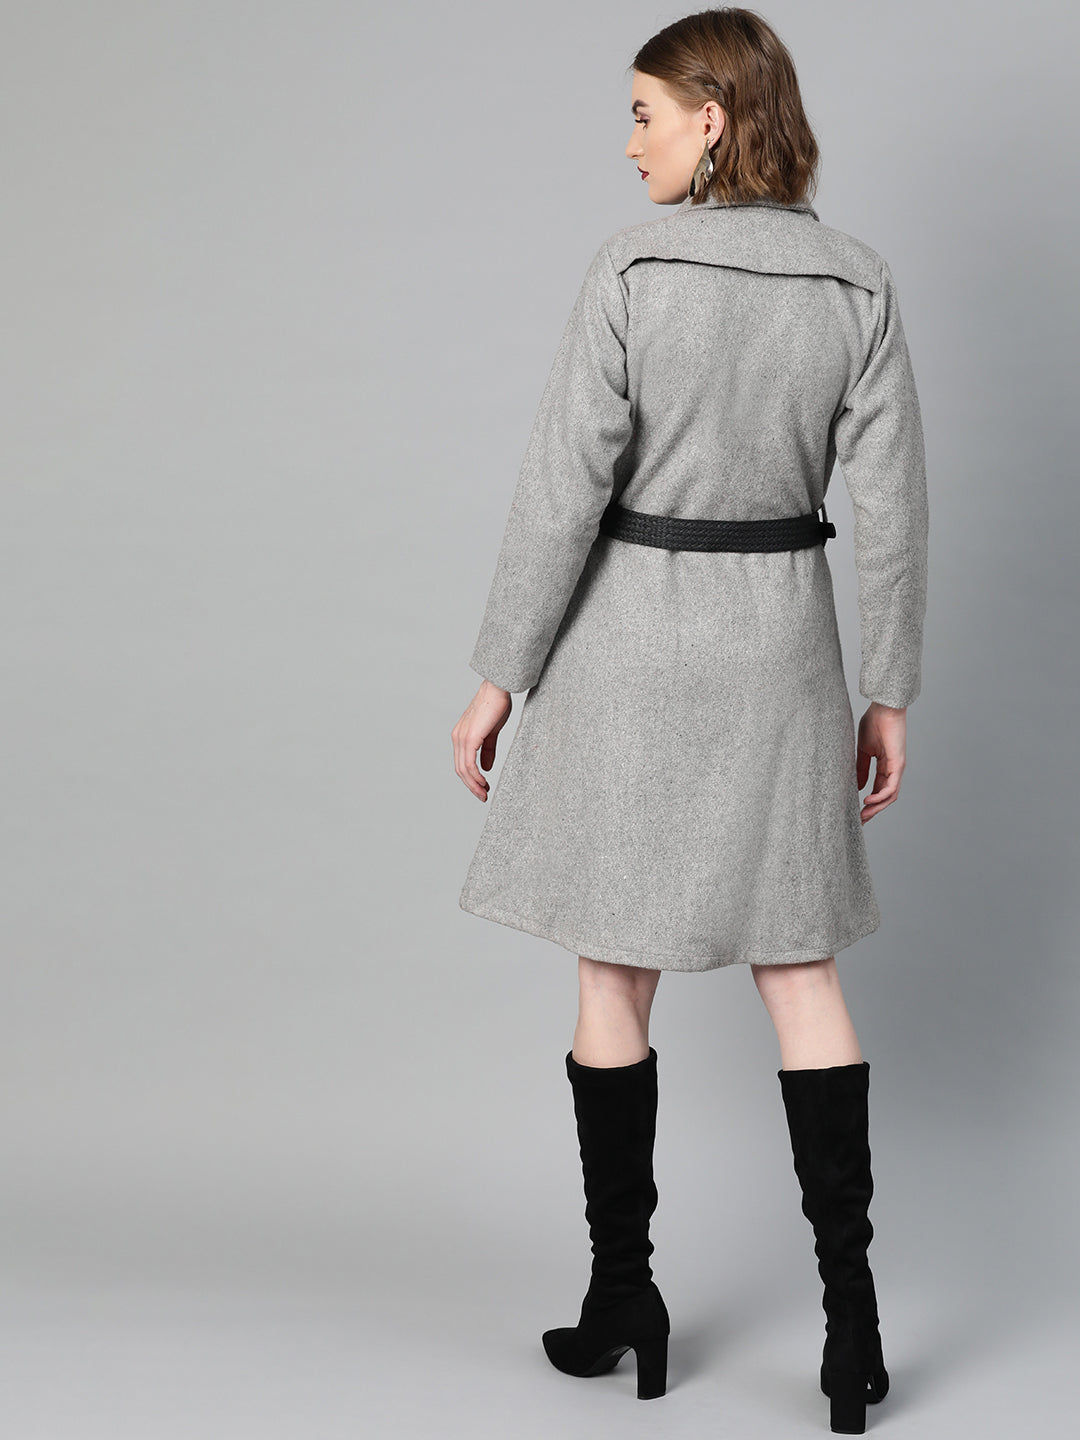 Athena Women Grey Melange Solid Trench Coat - Athena Lifestyle